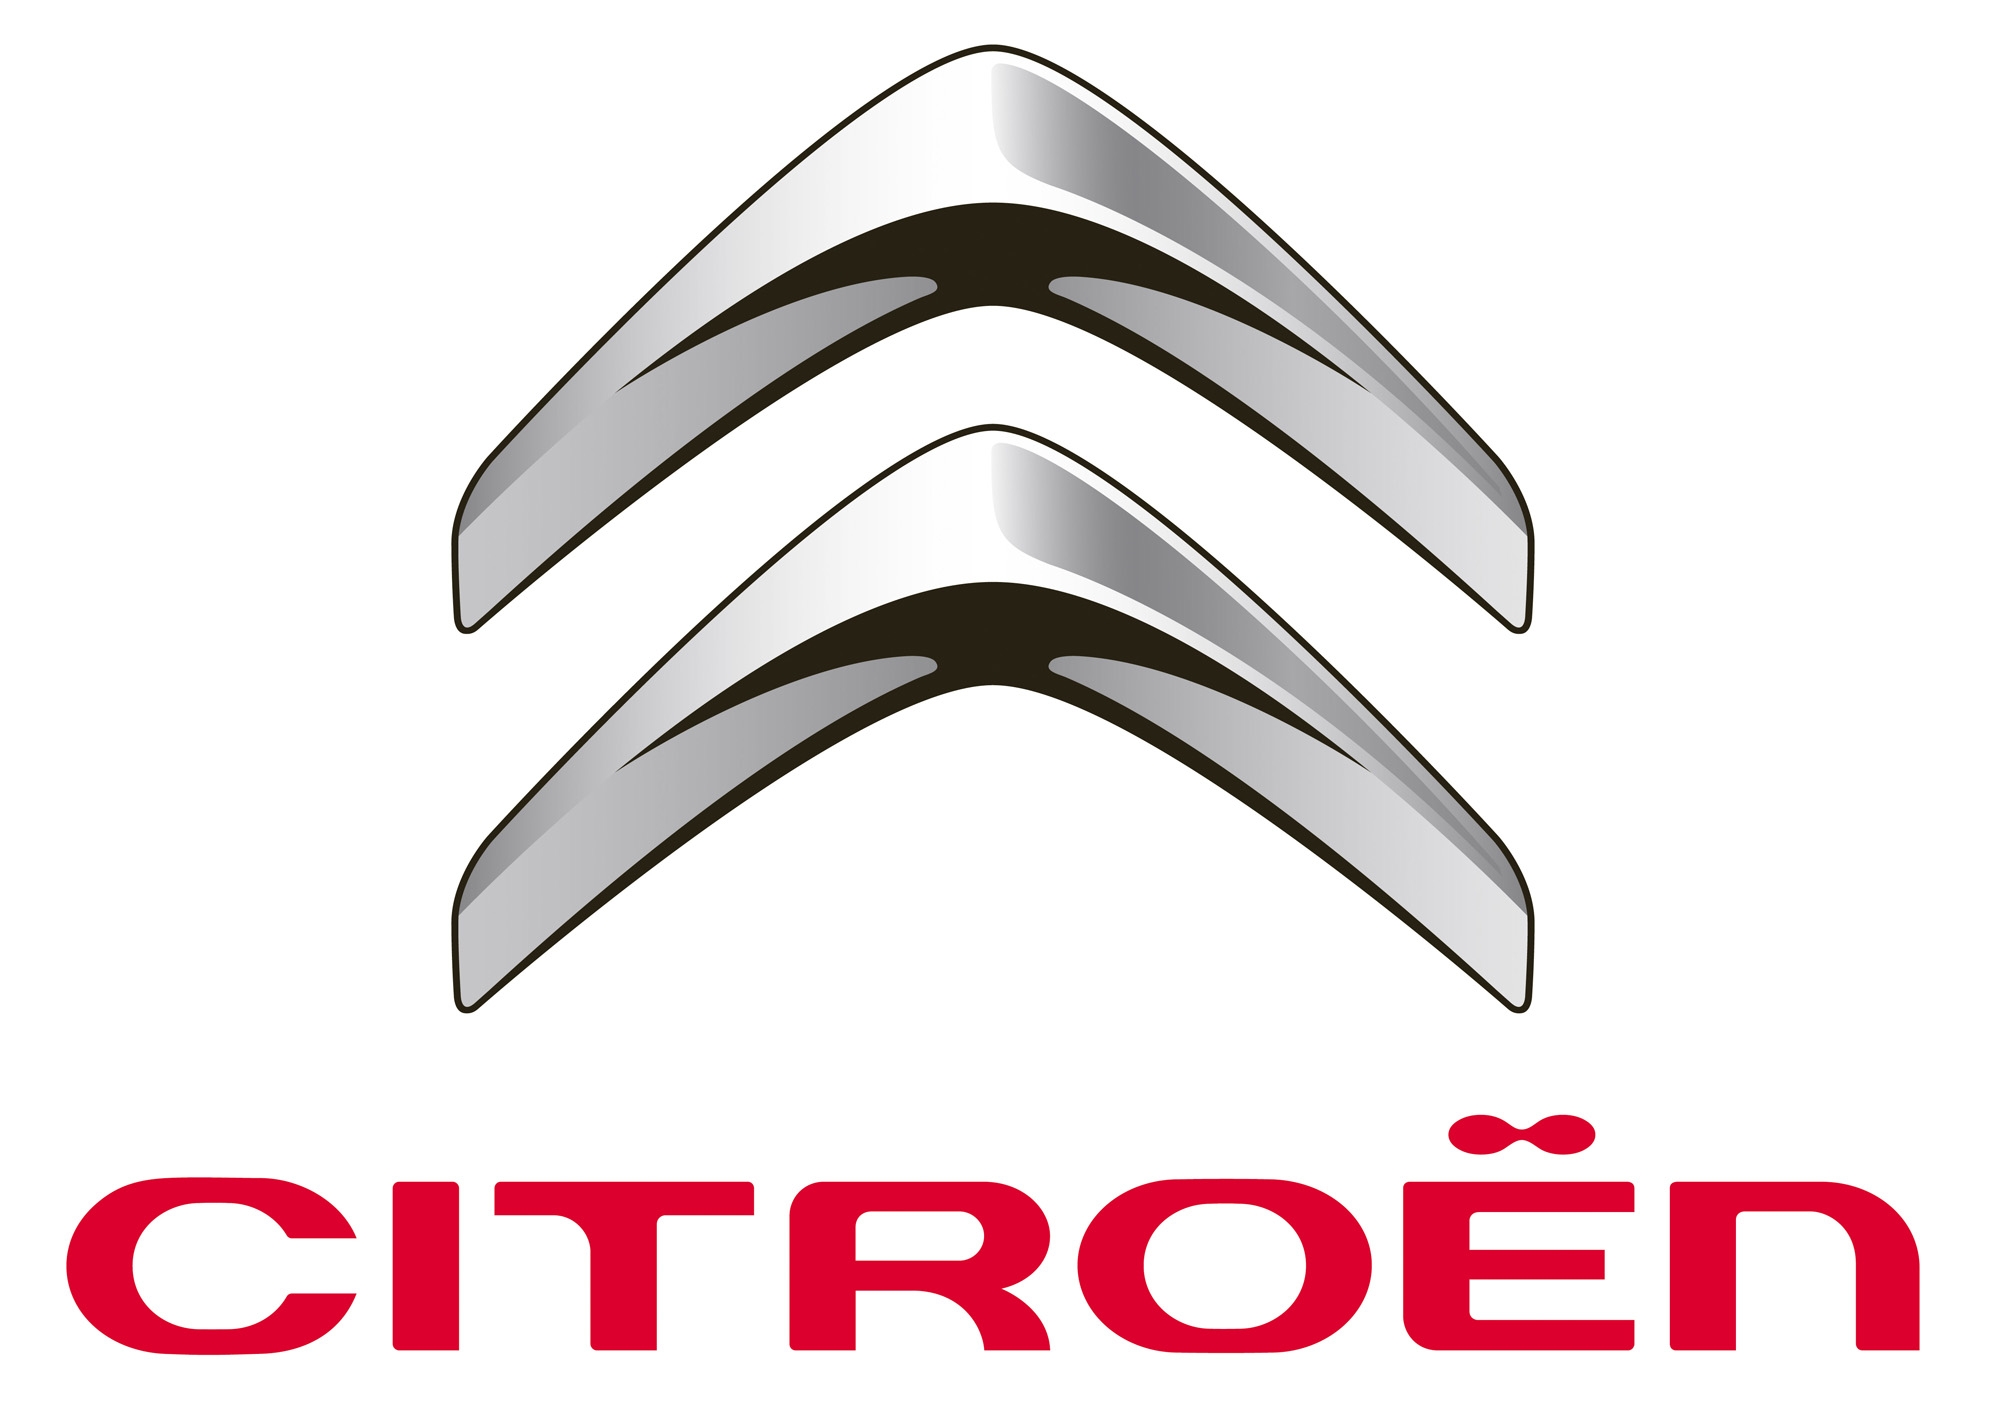 GARAGE GENTIL "Citroën"